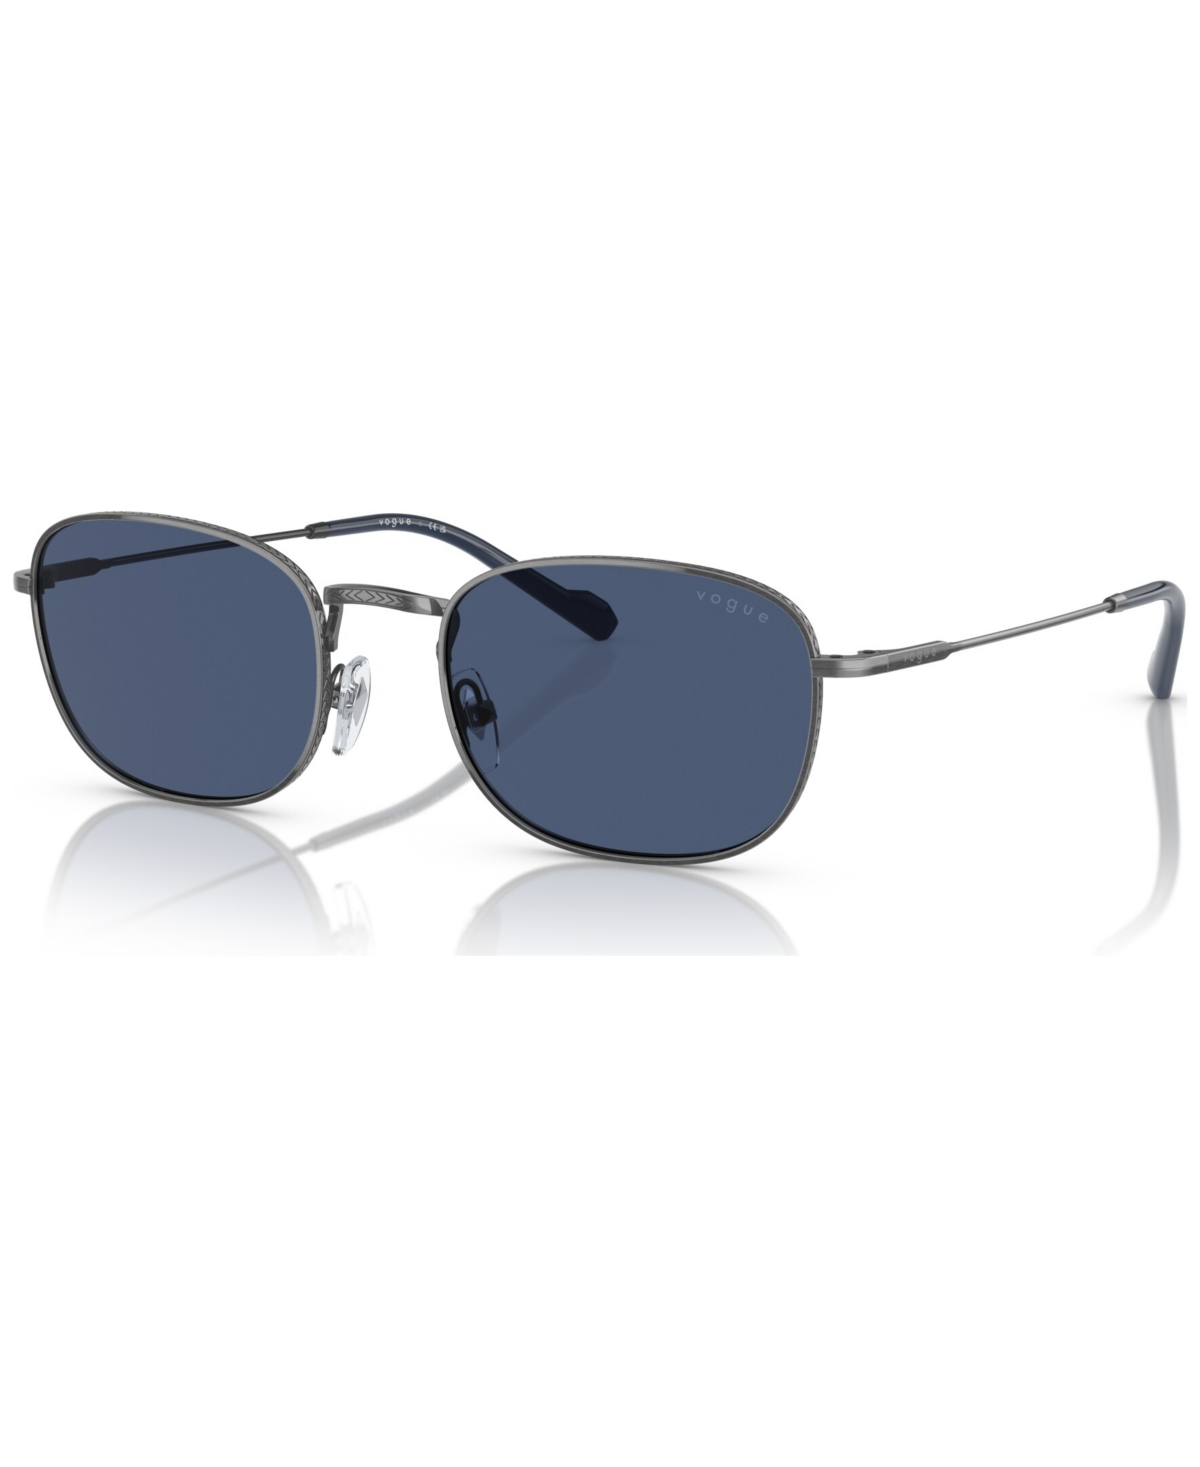 Men's Sunglasses, VO4276S - Silver-Tone Antique Like